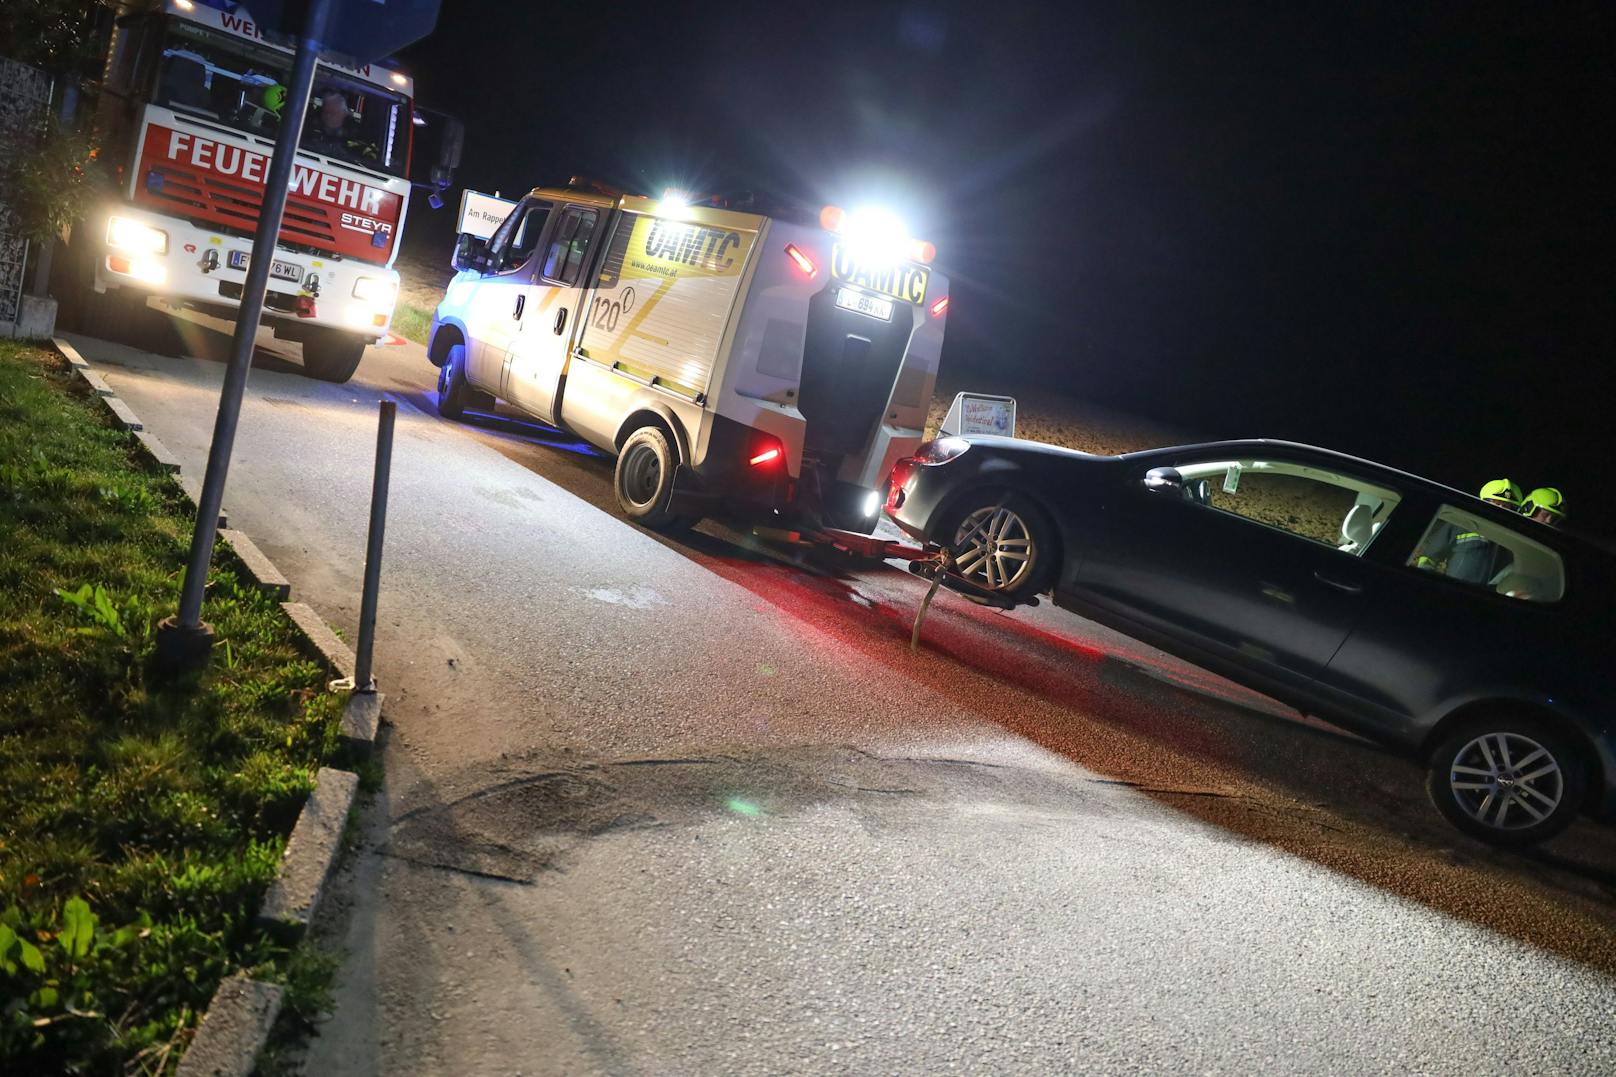 Die Feuerwehr wurde am späten Donnerstagabend zu Aufräumarbeiten nach einem Verkehrsunfall nach Weißkirchen an der Traun (Bezirk Wels-Land) alarmiert.